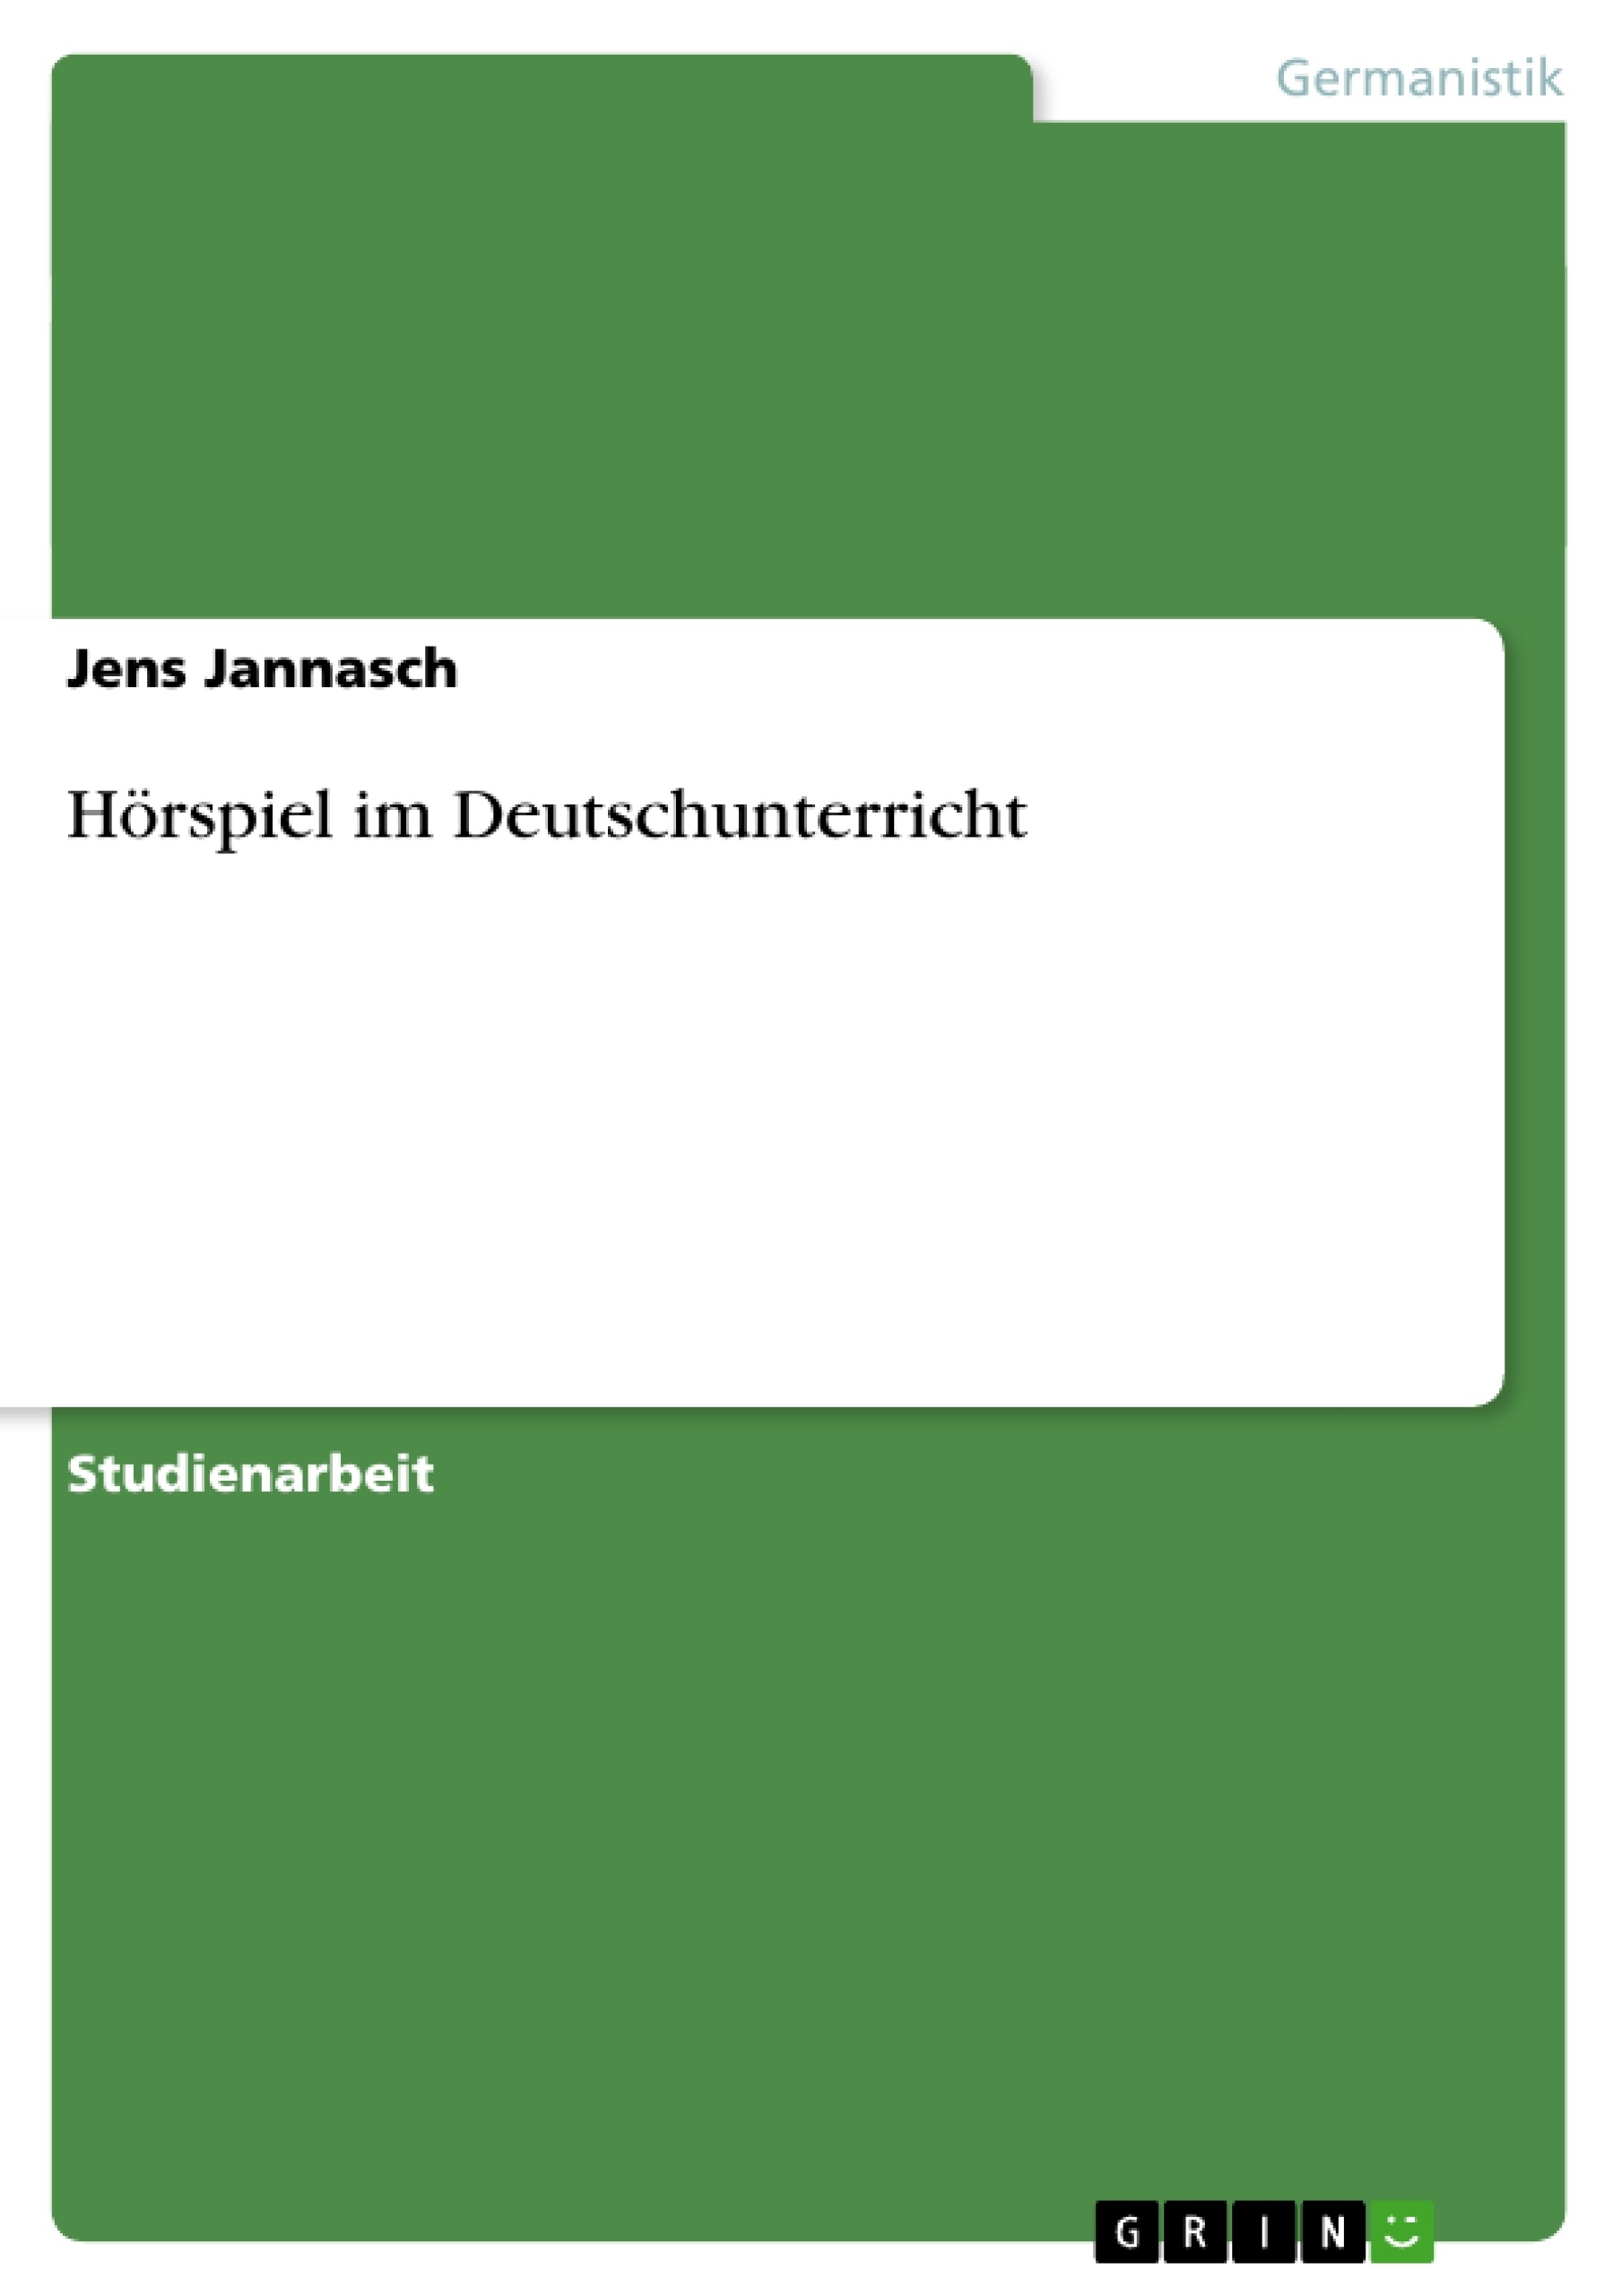 Title: Hörspiel im Deutschunterricht